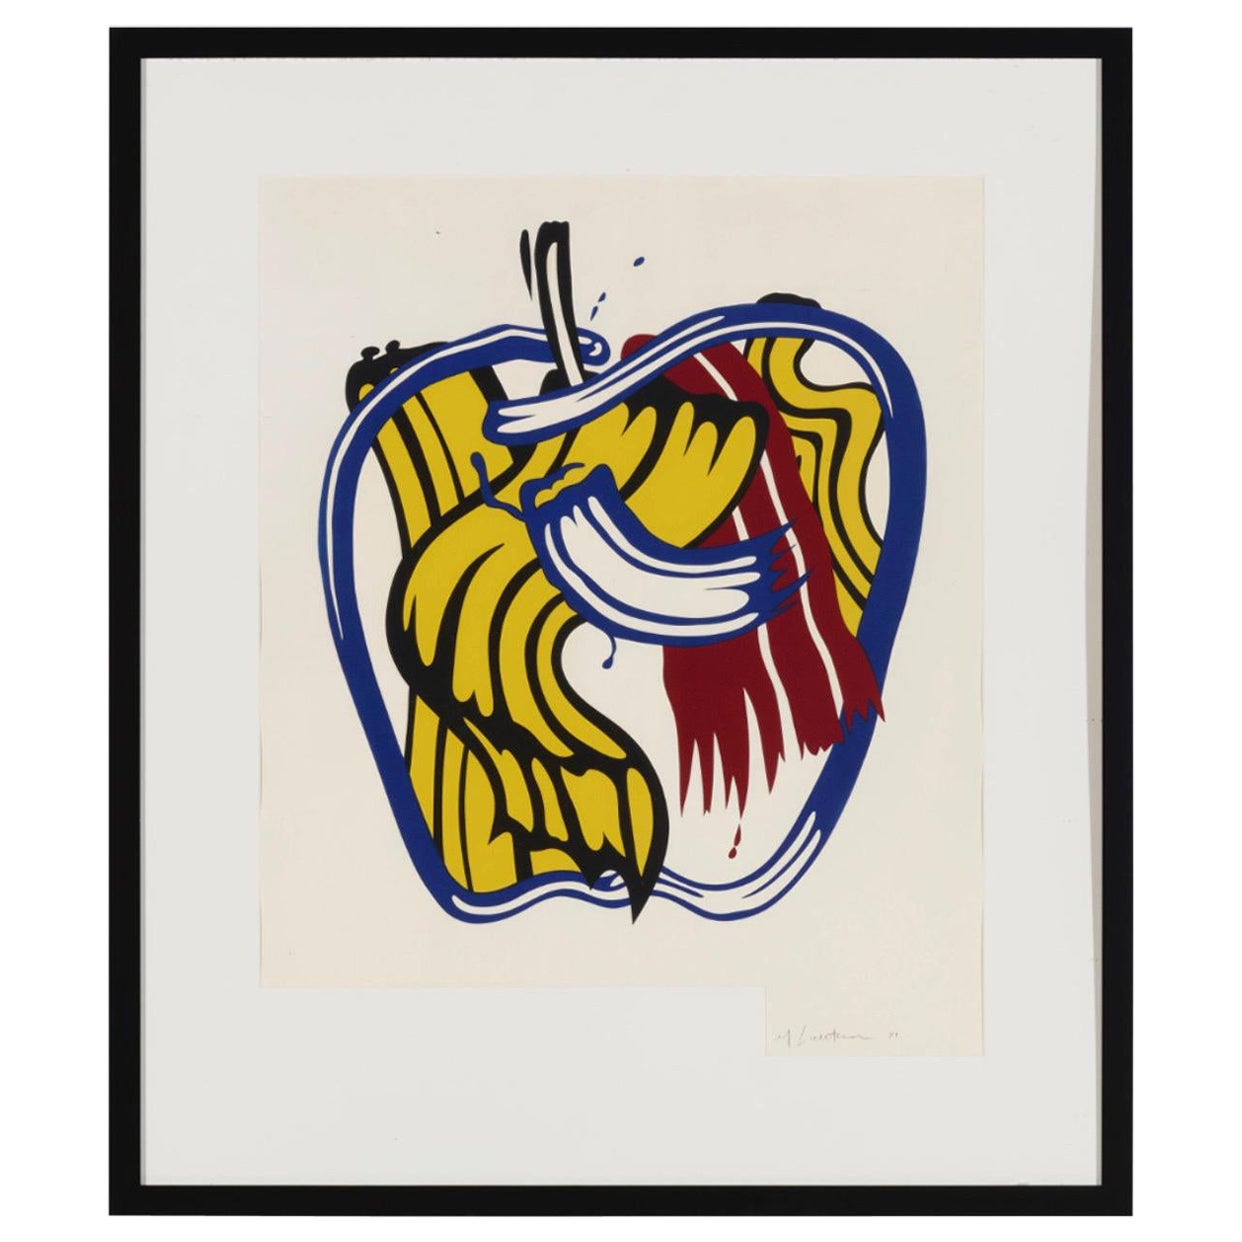 Lithographie von Roy Lichtenstein für das Kunstmuseum in St. Louis